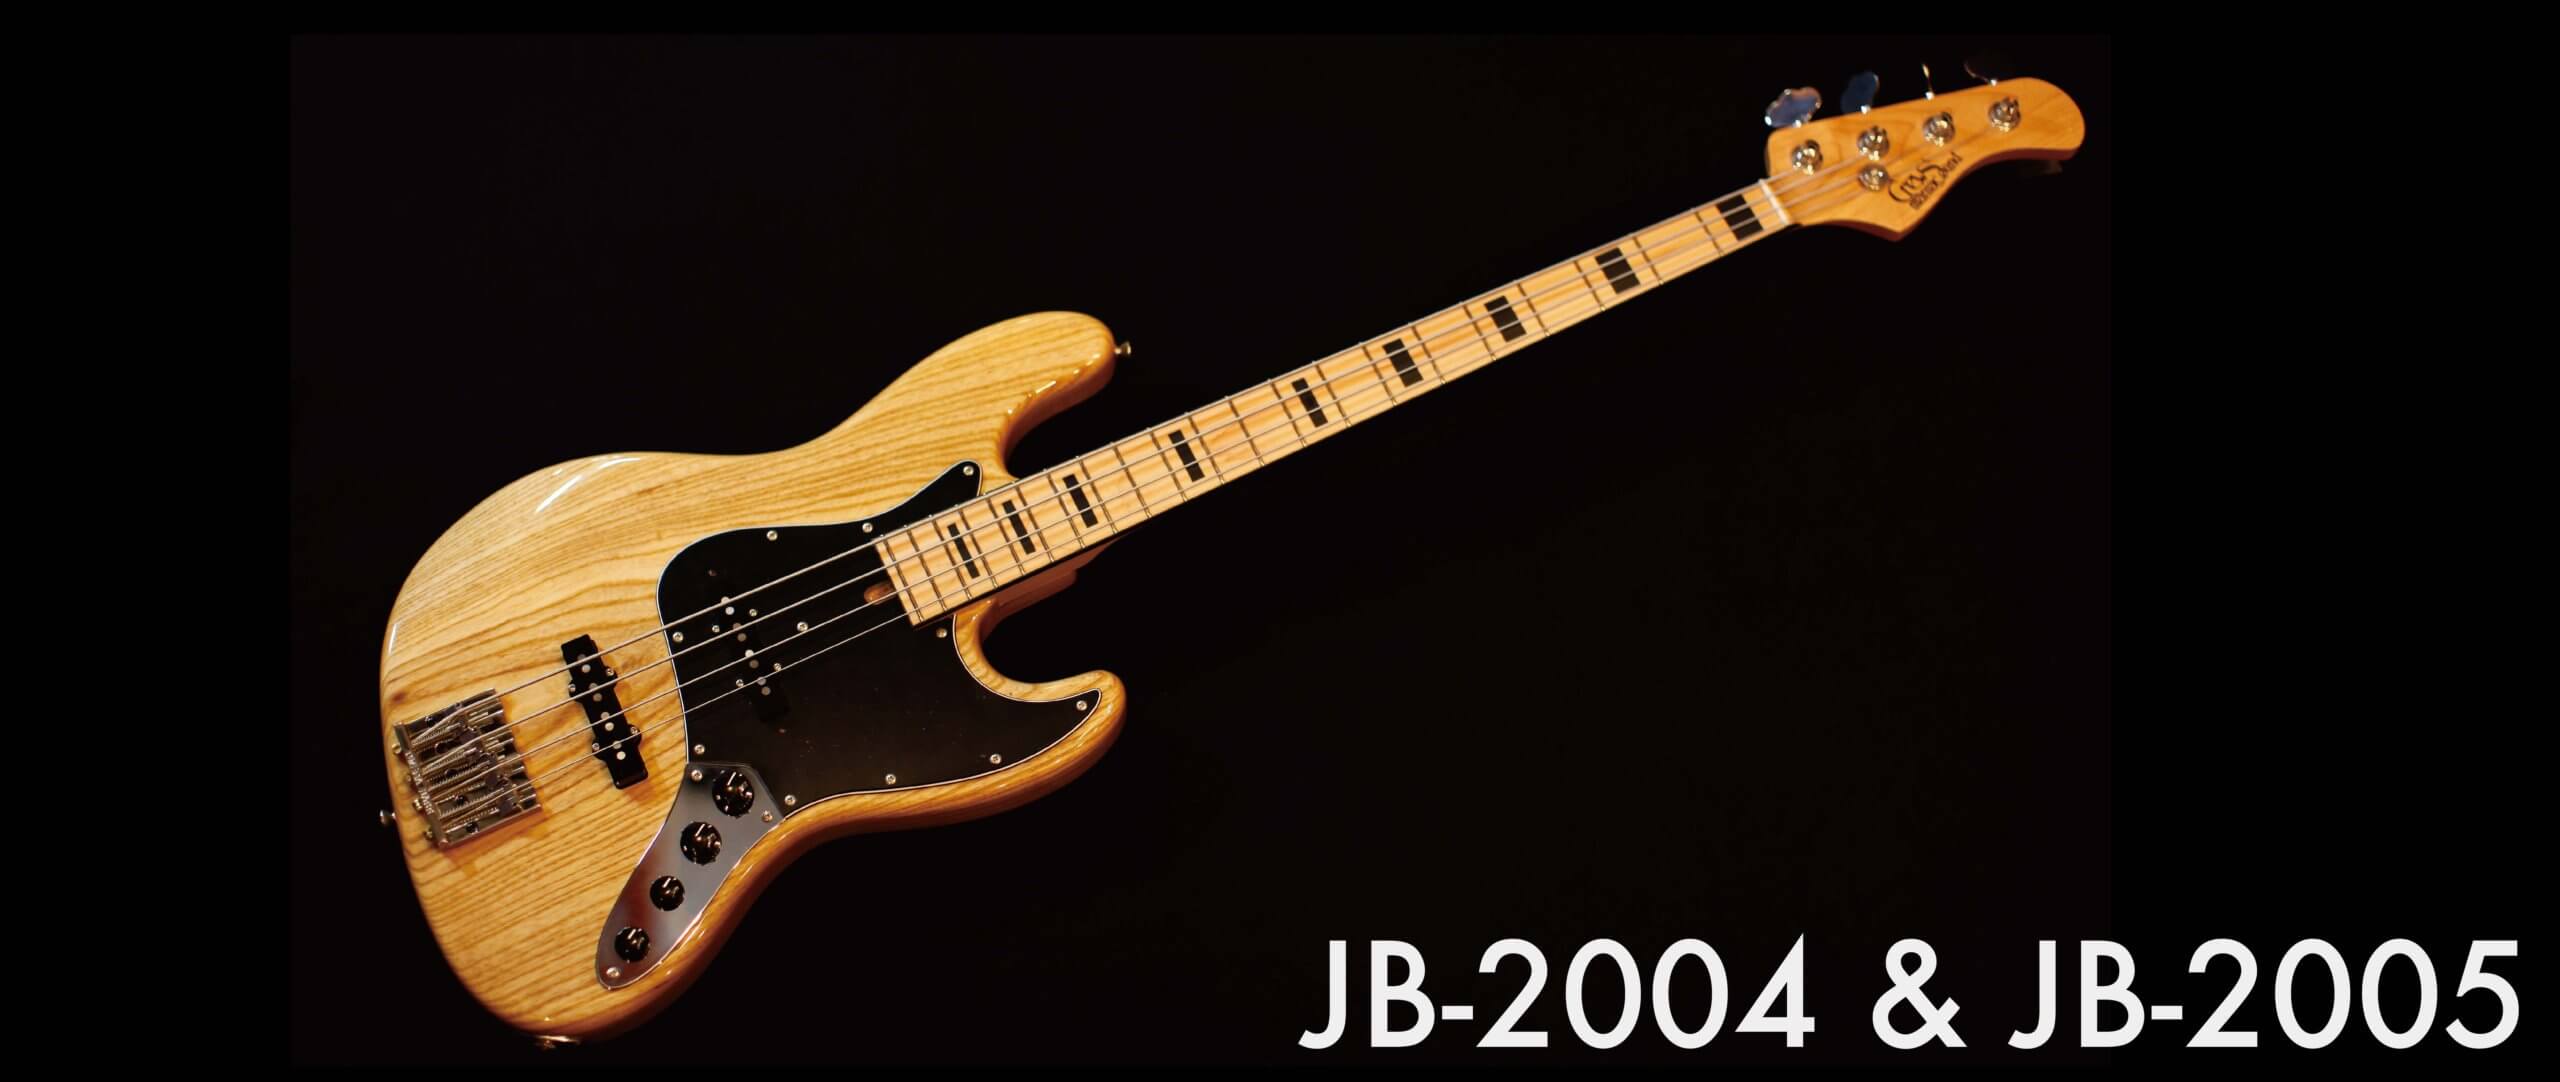 JB-2004/2005 Series